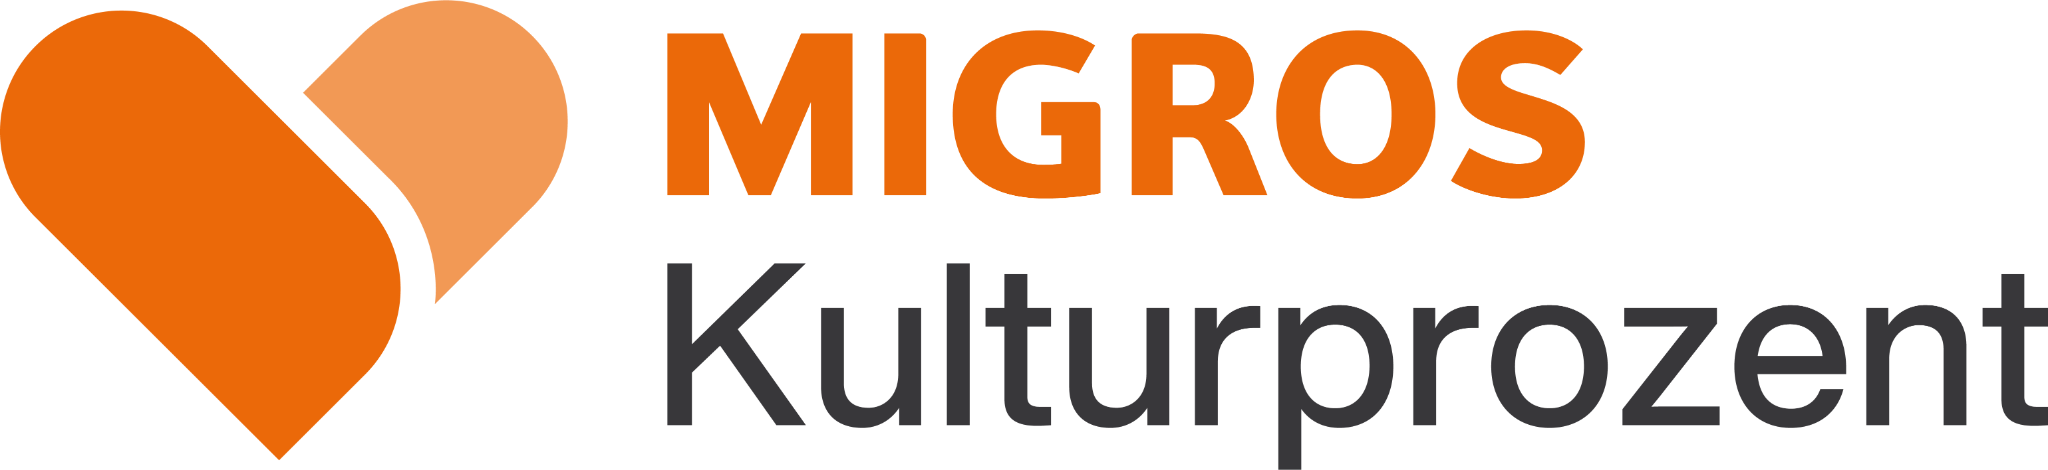 Migrosaare Kulturprozent